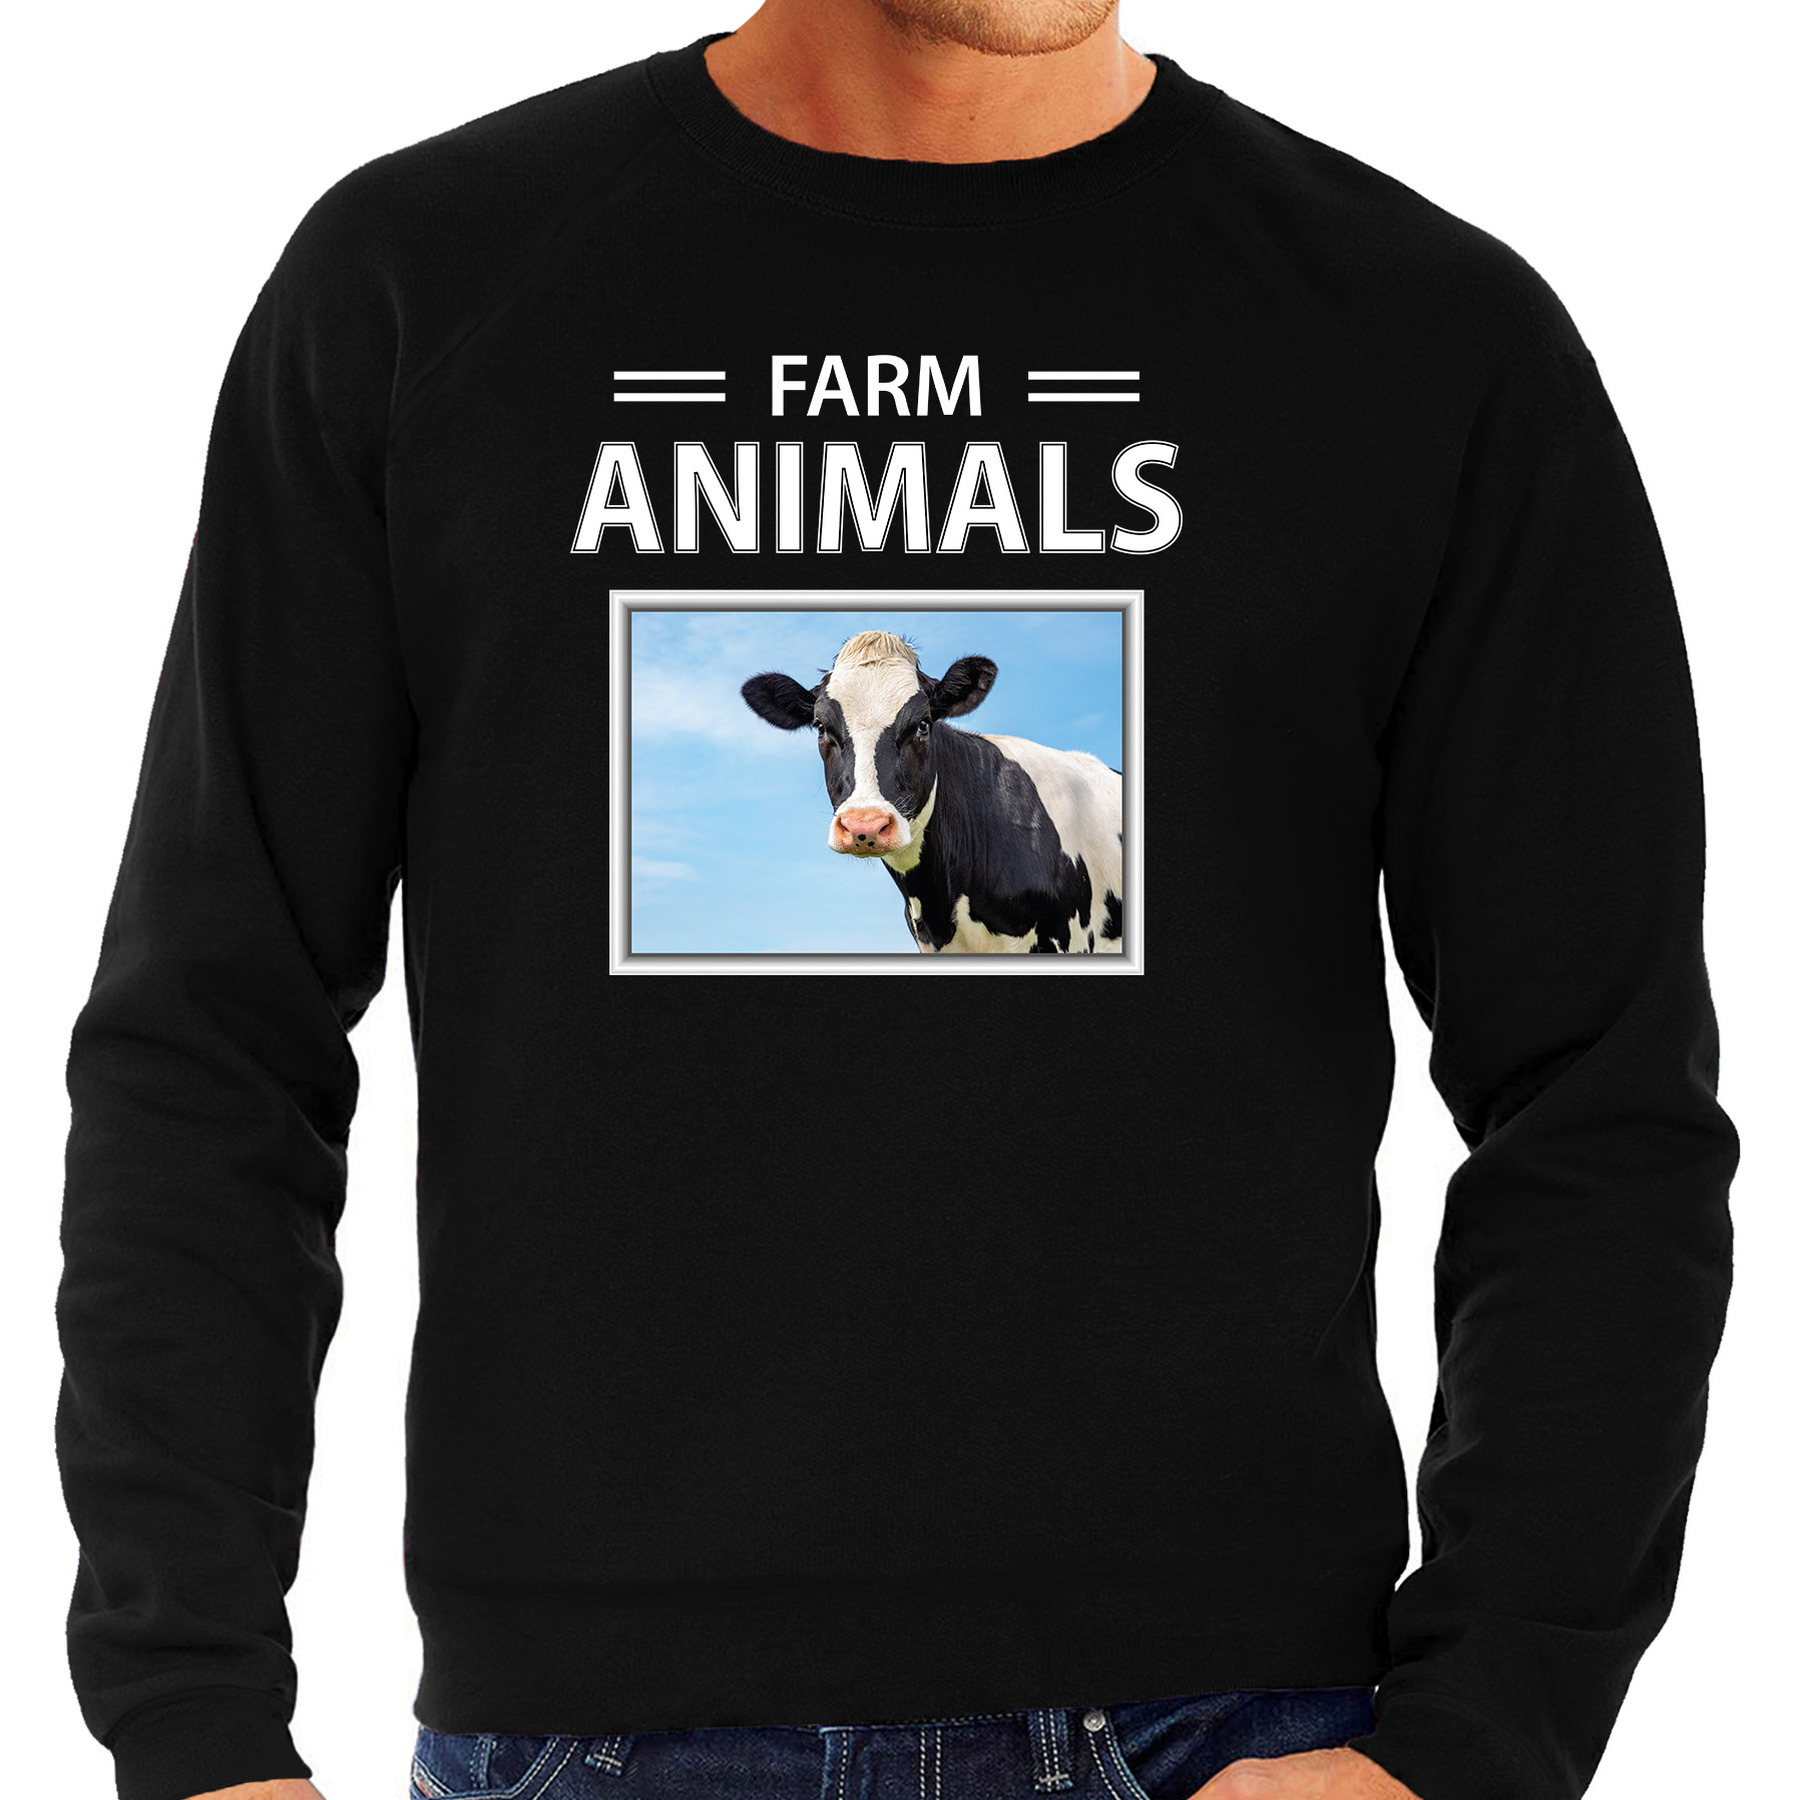 Koeien sweater / trui met dieren foto farm animals zwart voor heren